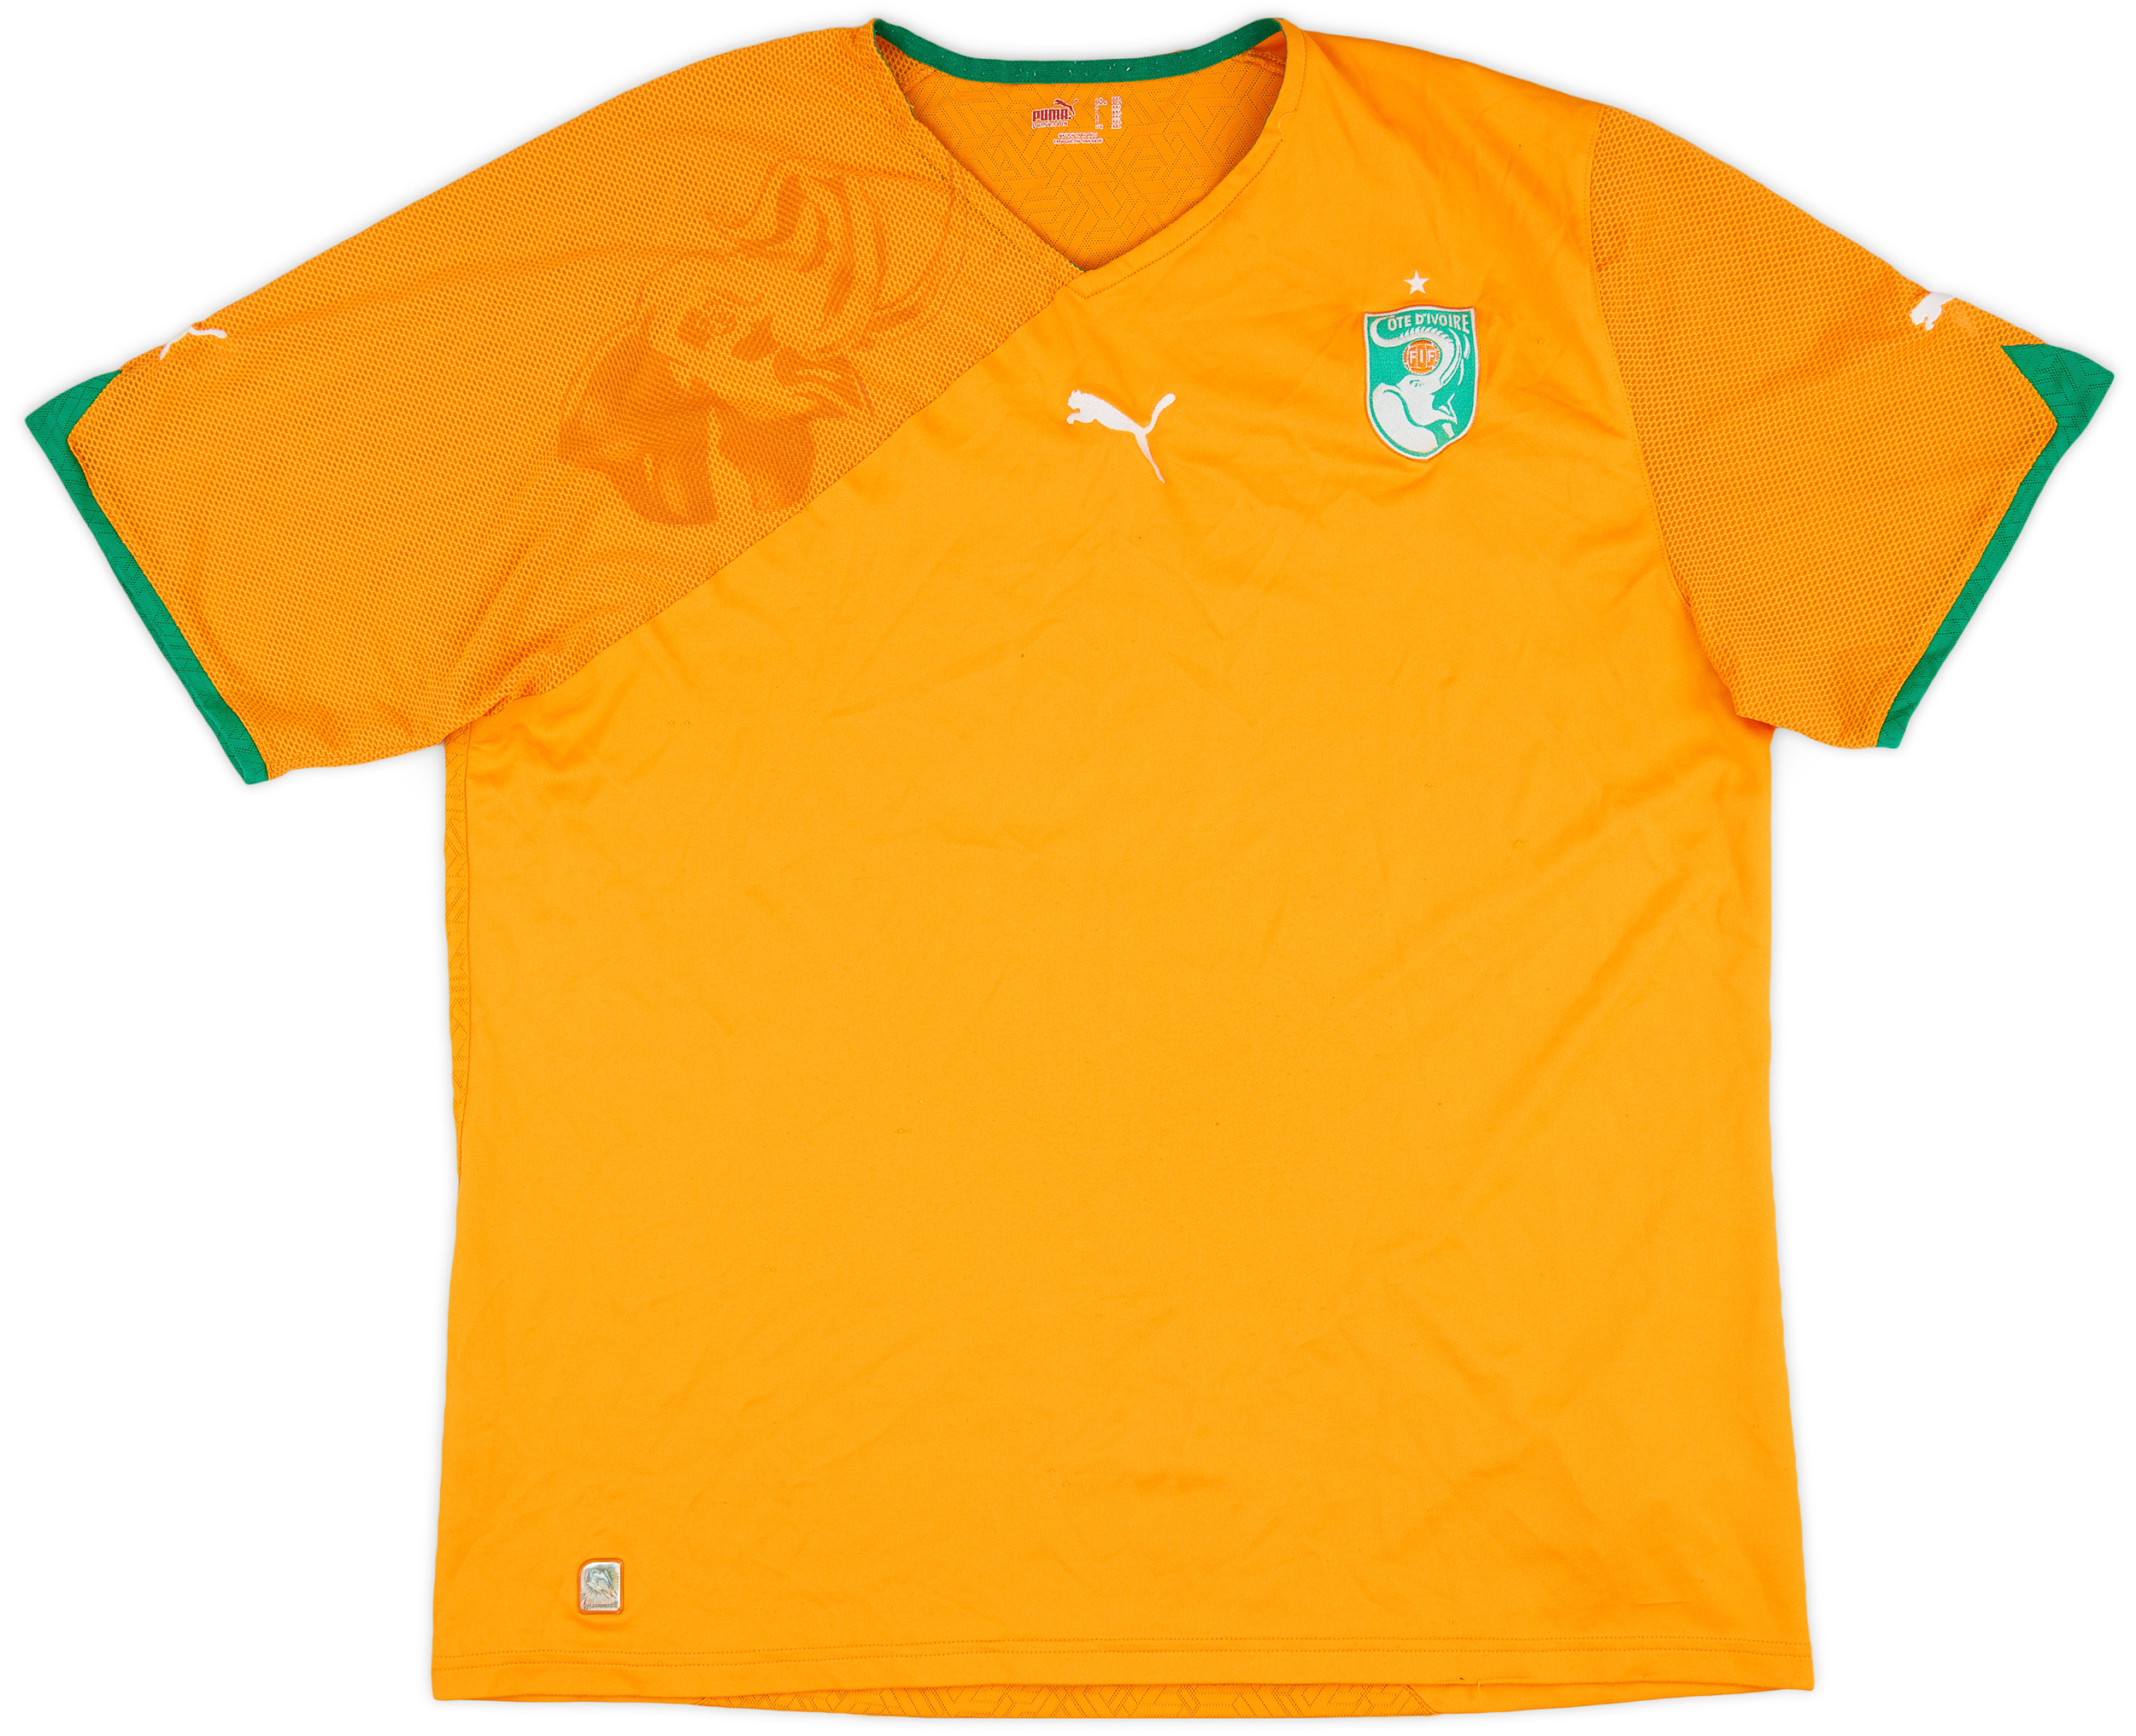 2010-11 Ivory Coast Home Shirt - 7/10 - ()